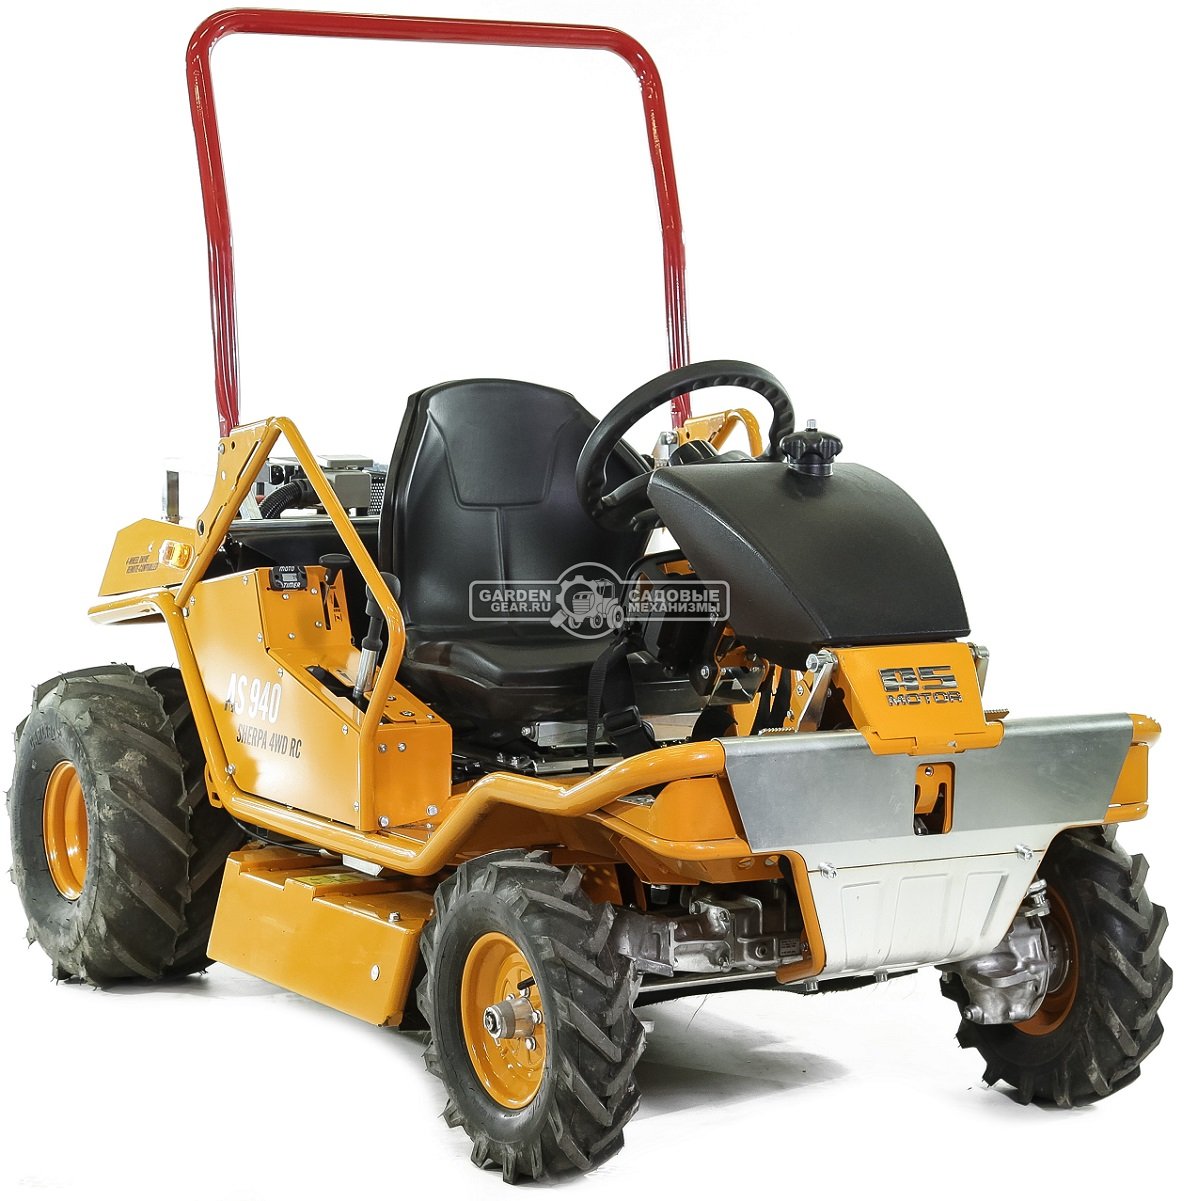 Садовый трактор для высокой травы и работы на склонах AS-Motor 940 Sherpa 4WD RC (GER, 90 см, B&S Pro, 724 см3, дифференциал, 325 кг.)